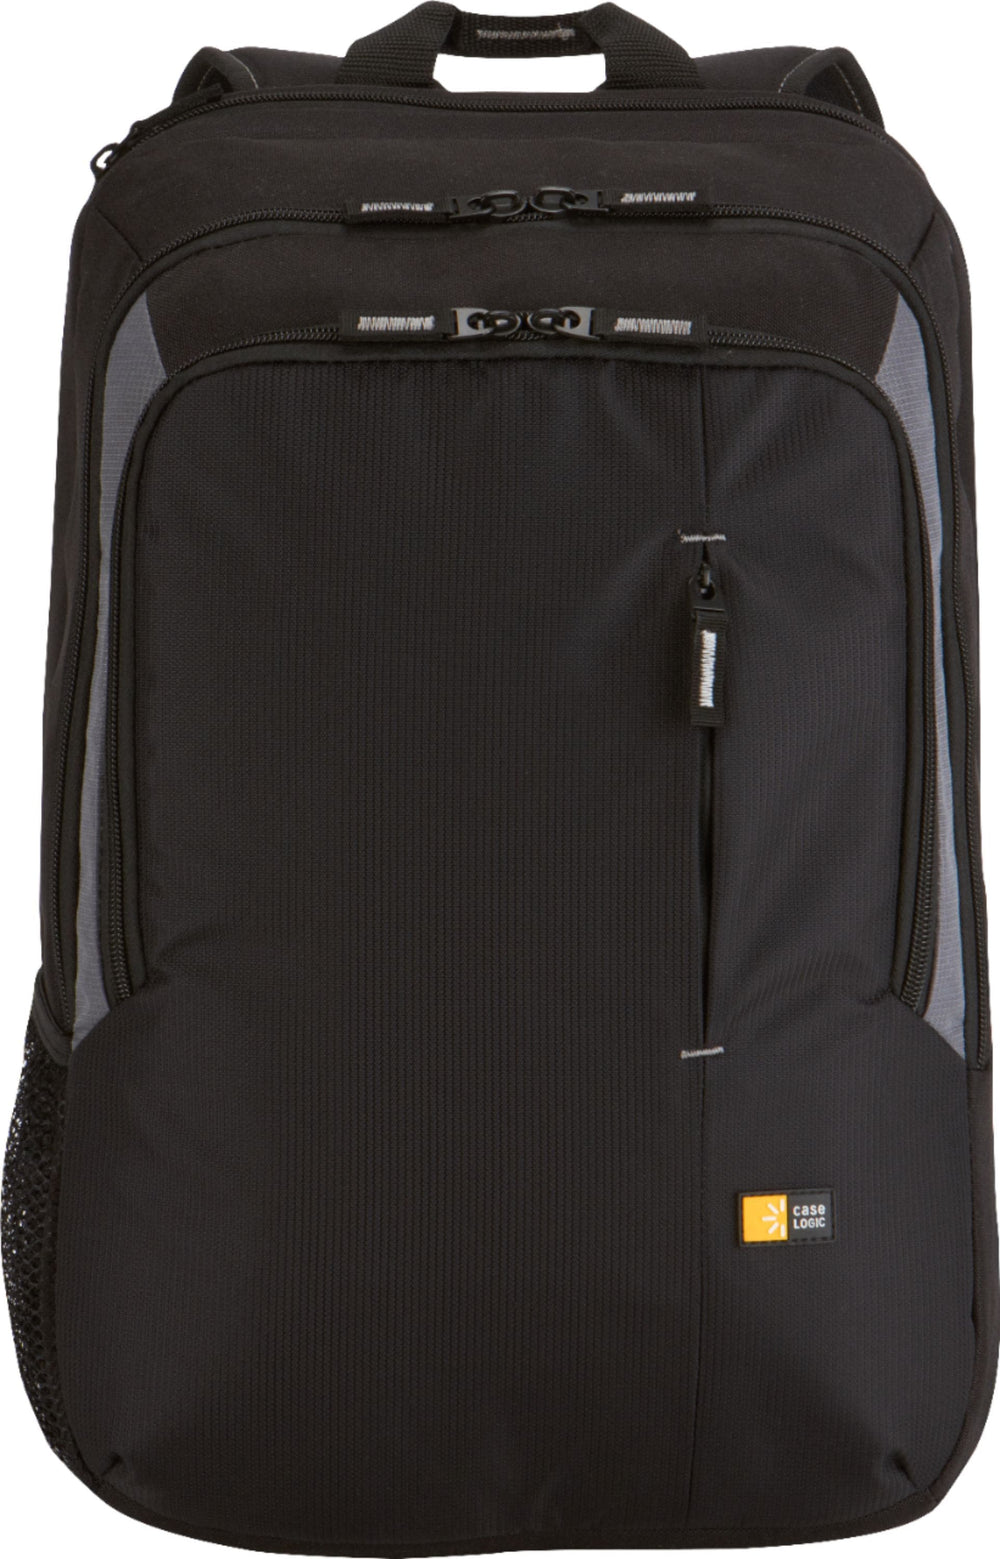 Case Logic - Backpack Laptop Case for 17" Laptop - Black_1